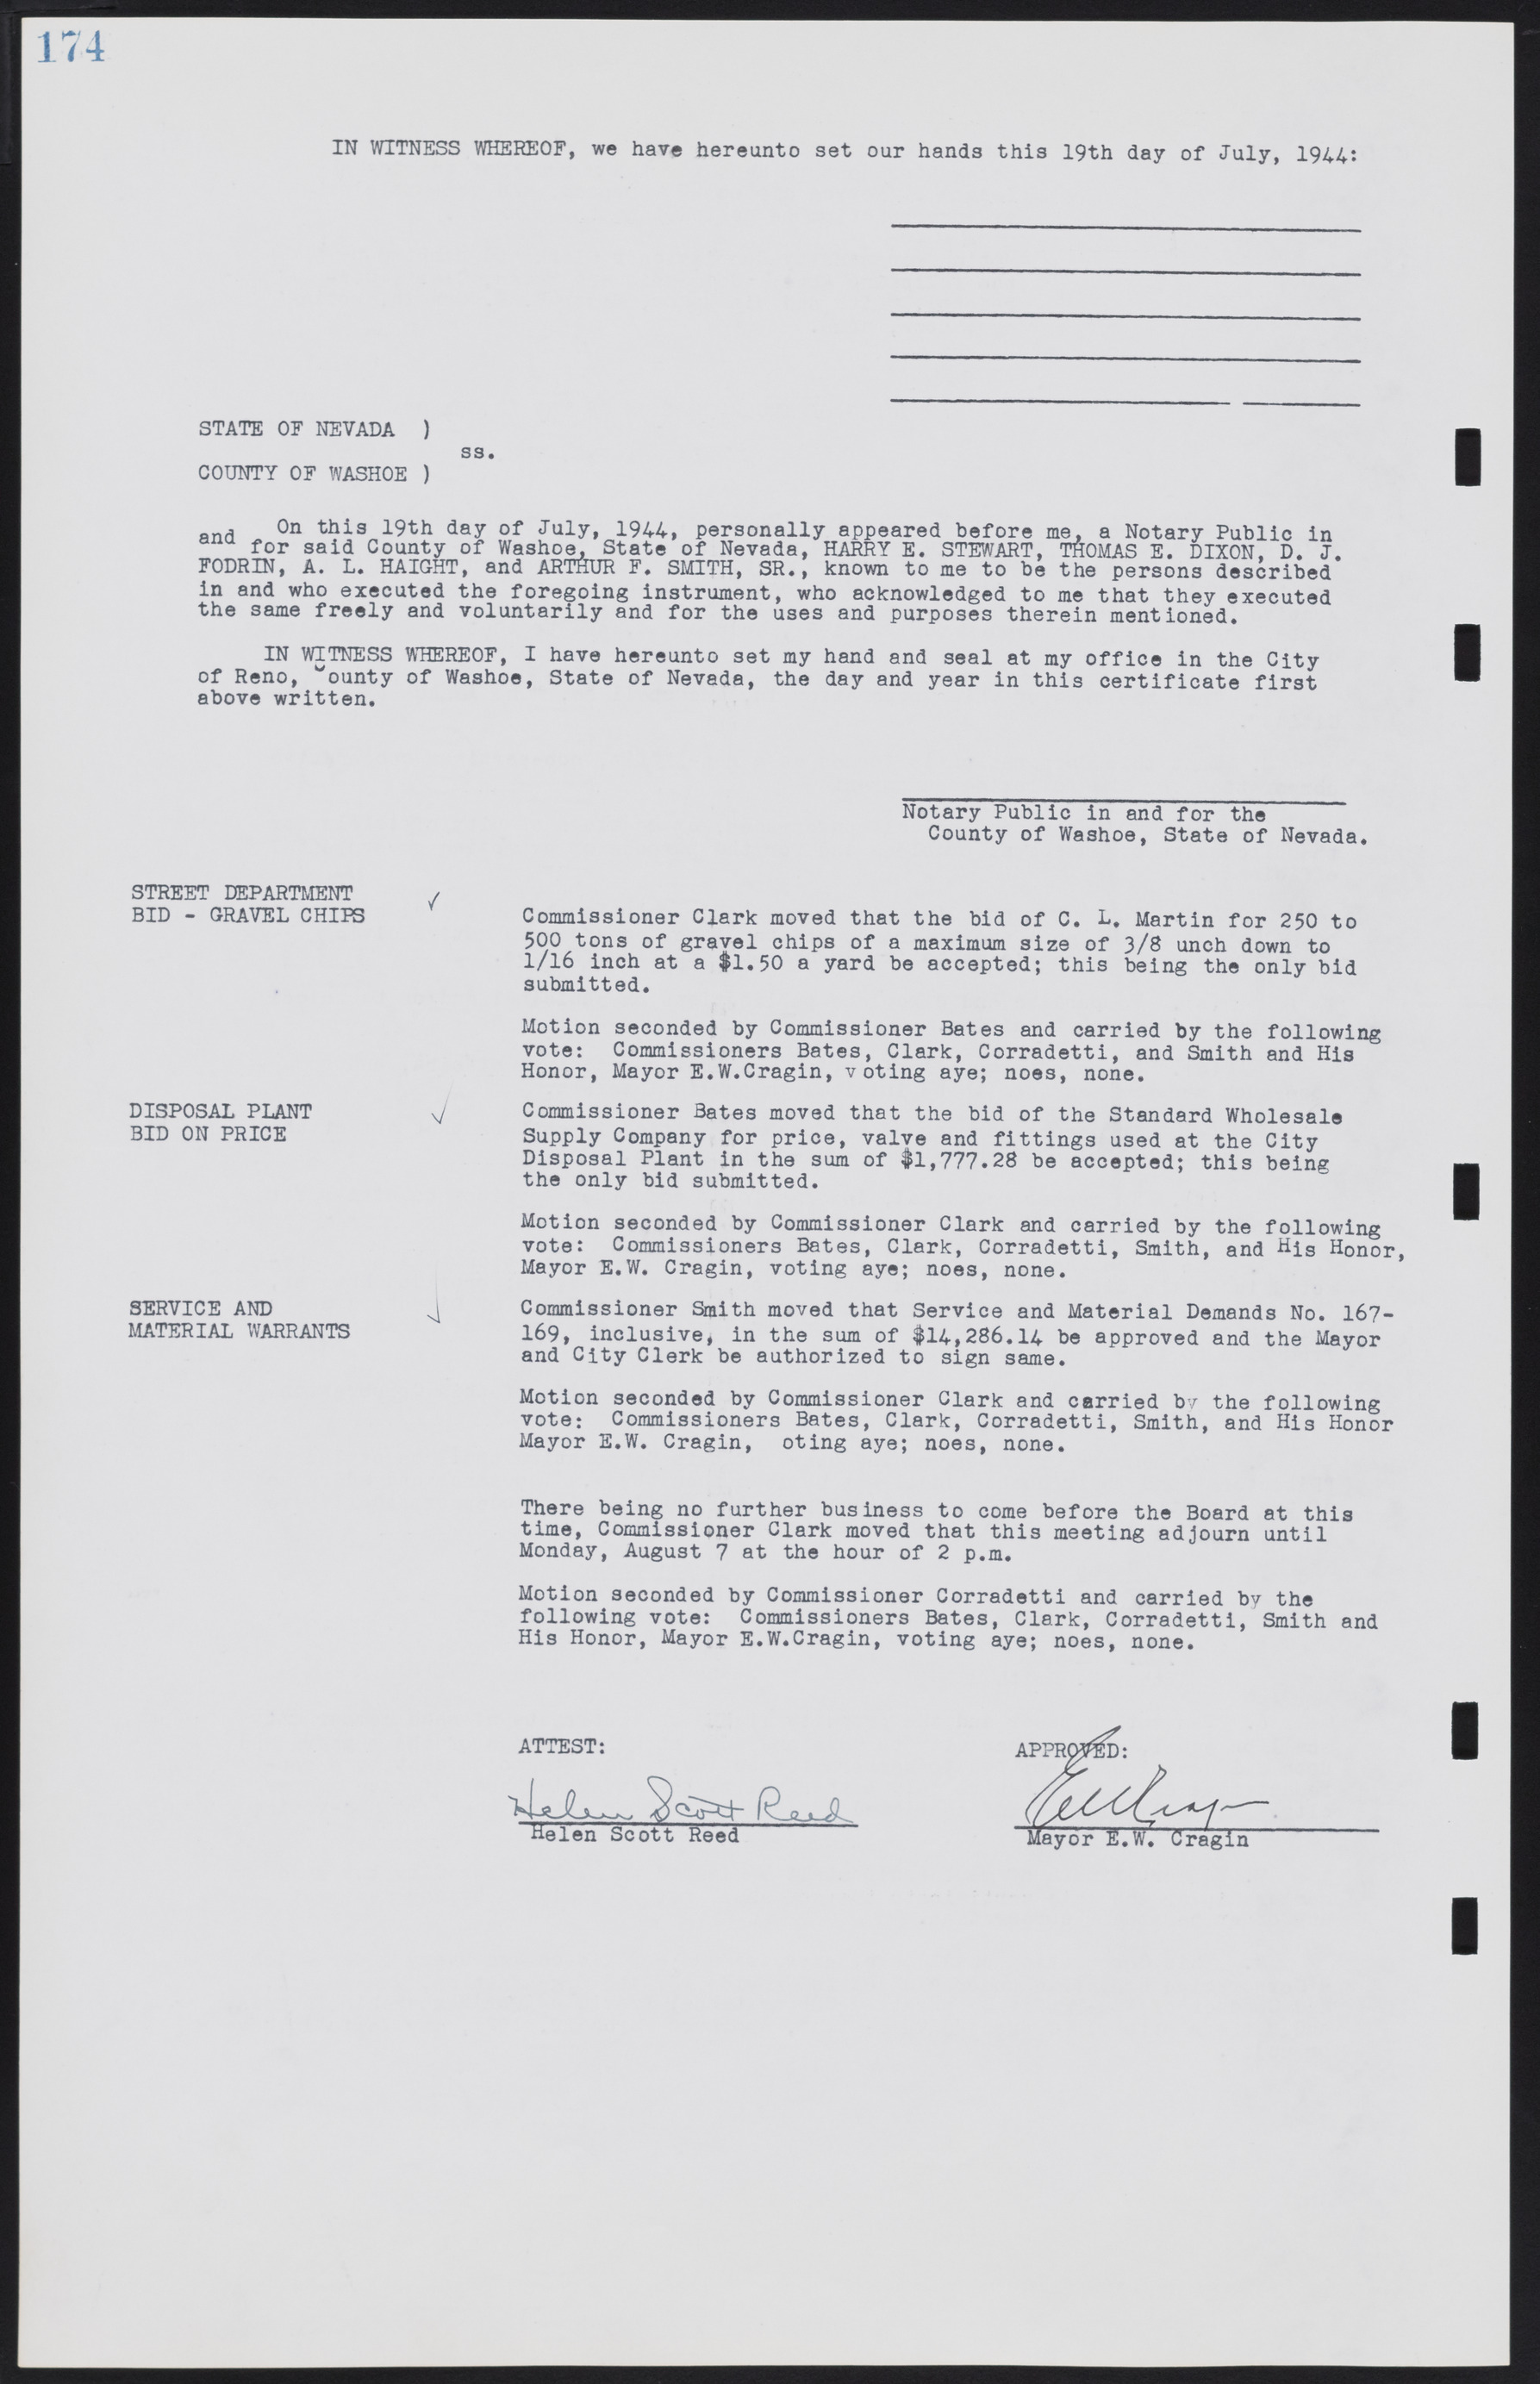 Las Vegas City Commission Minutes, August 11, 1942 to December 30, 1946, lvc000005-193